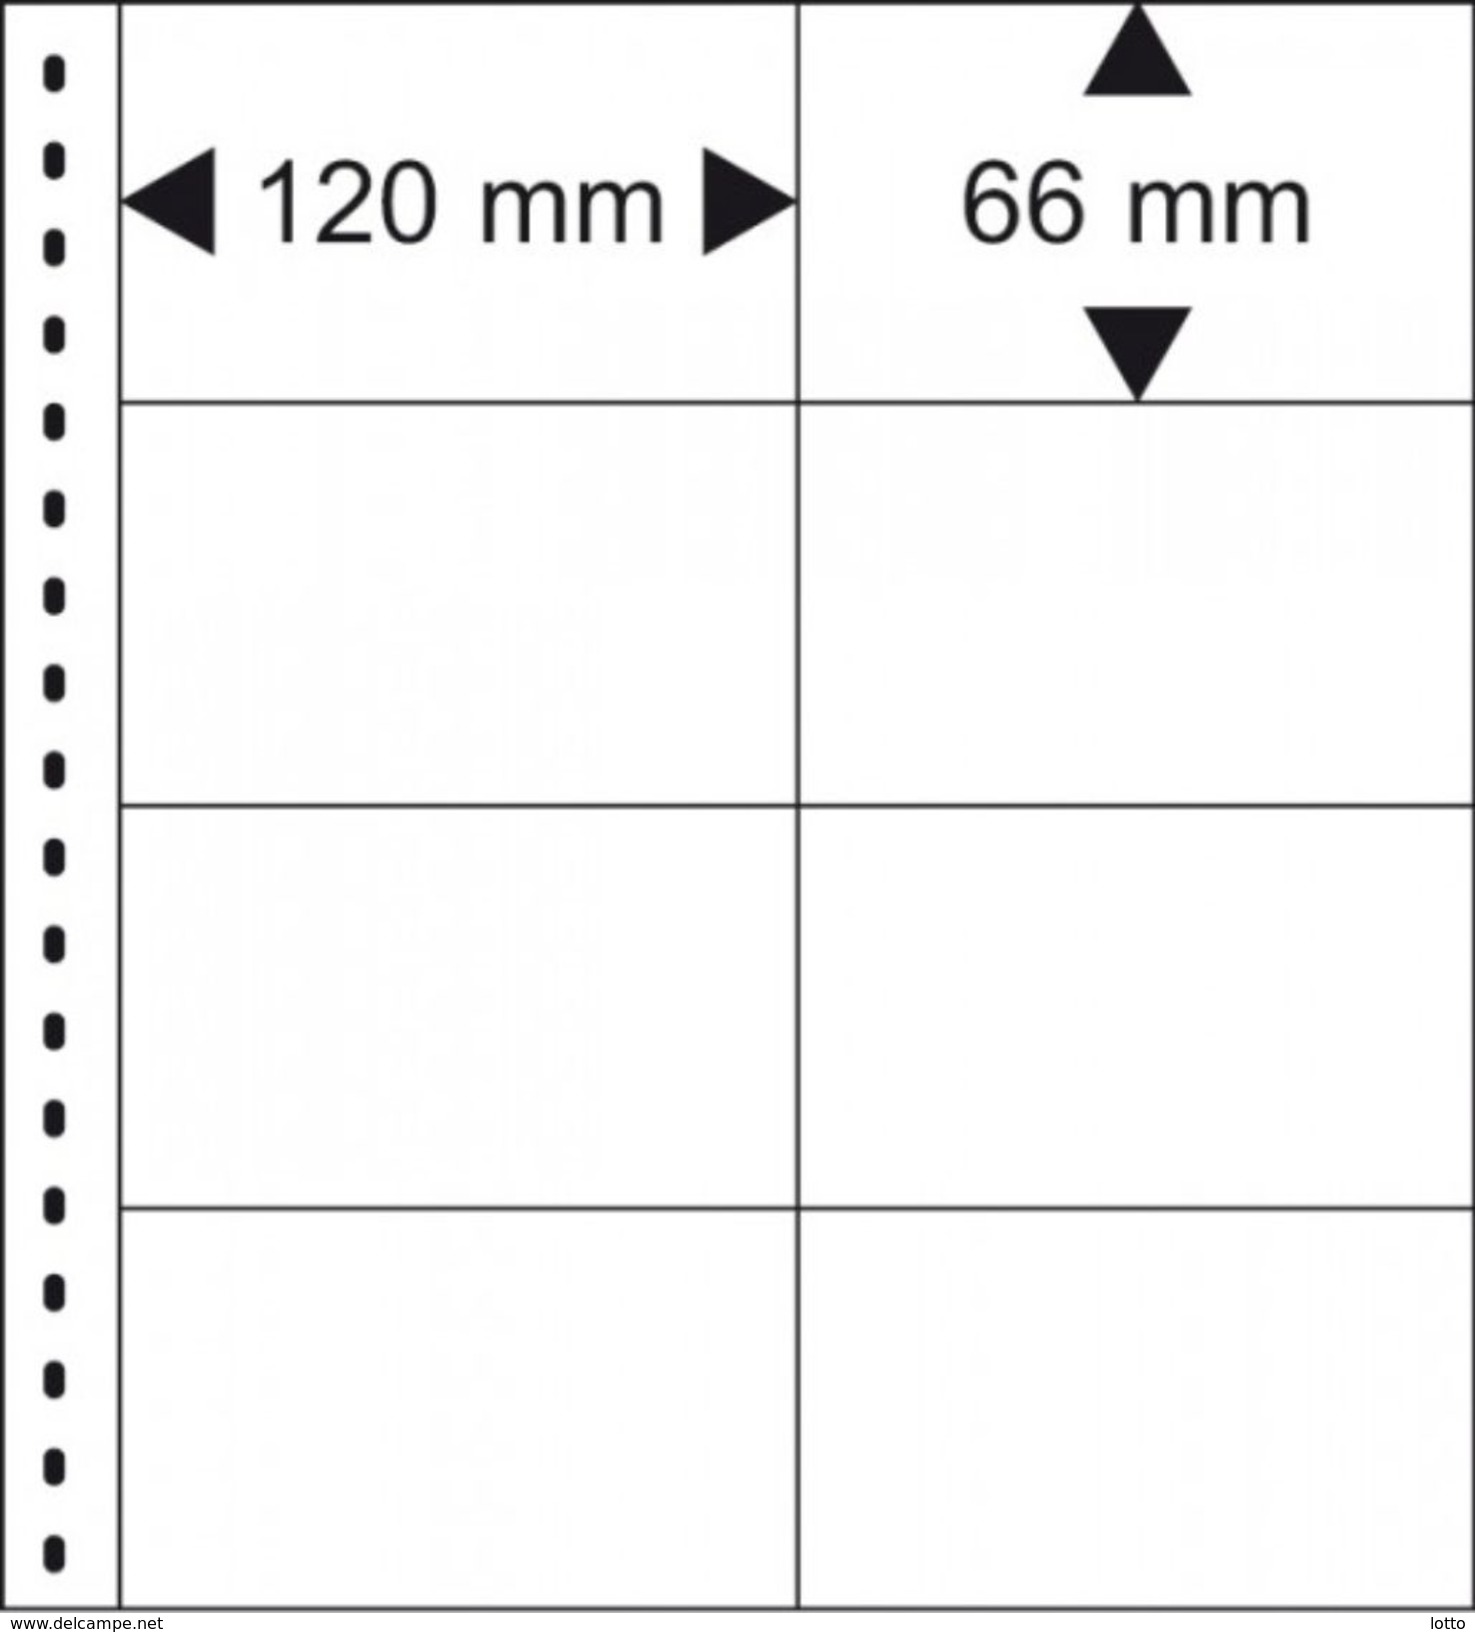 Lindner Omnia Klemmkartenblatt Mit 8 Taschen (120 X 66 Mm) Pro Seite, Schwarz +++ NEU OVP +++ (040) - Blankoblätter